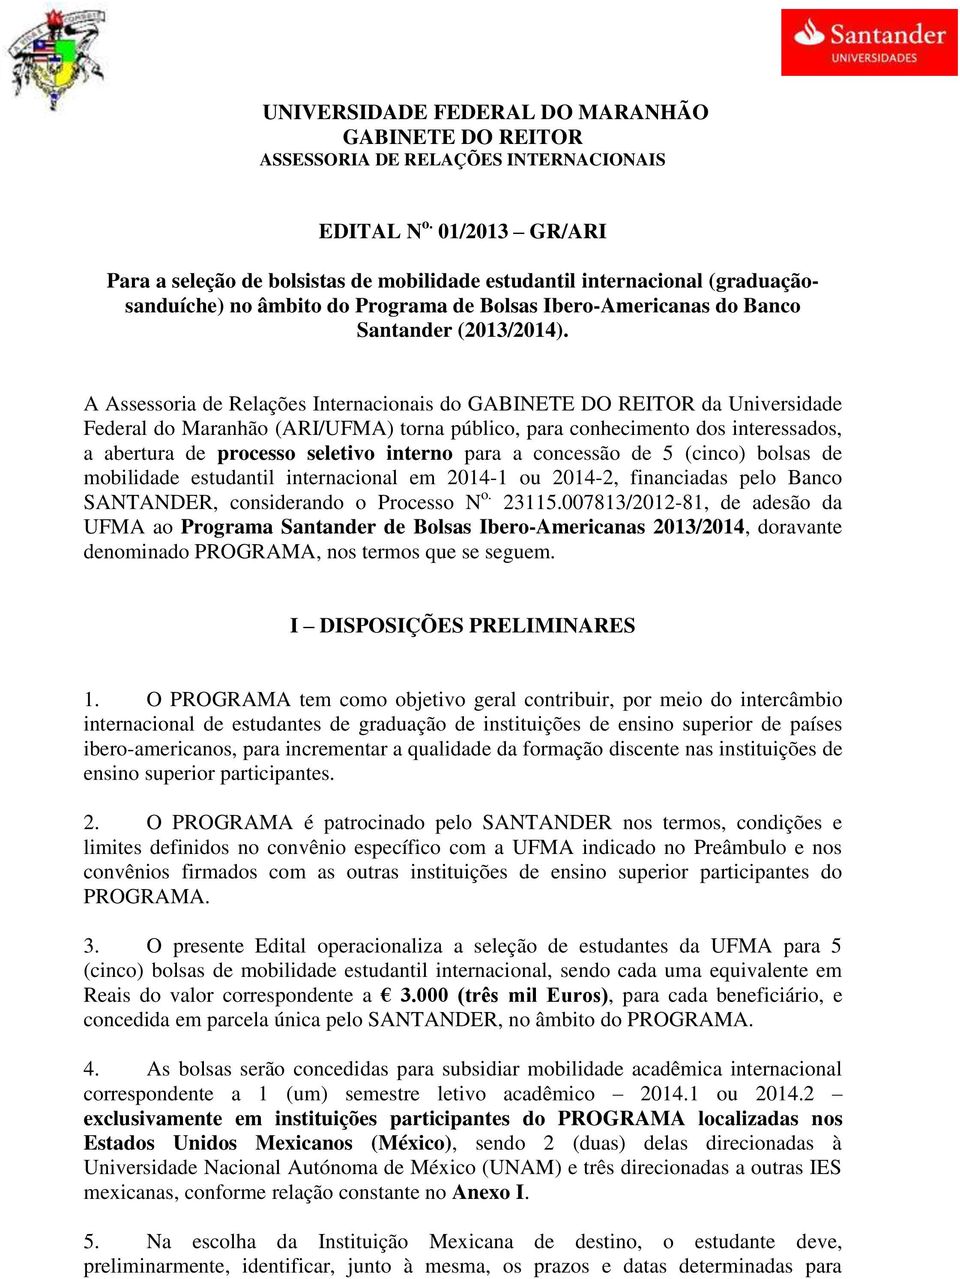 A Assessoria de Relações Internacionais do GABINETE DO REITOR da Universidade Federal do Maranhão (ARI/UFMA) torna público, para conhecimento dos interessados, a abertura de processo seletivo interno